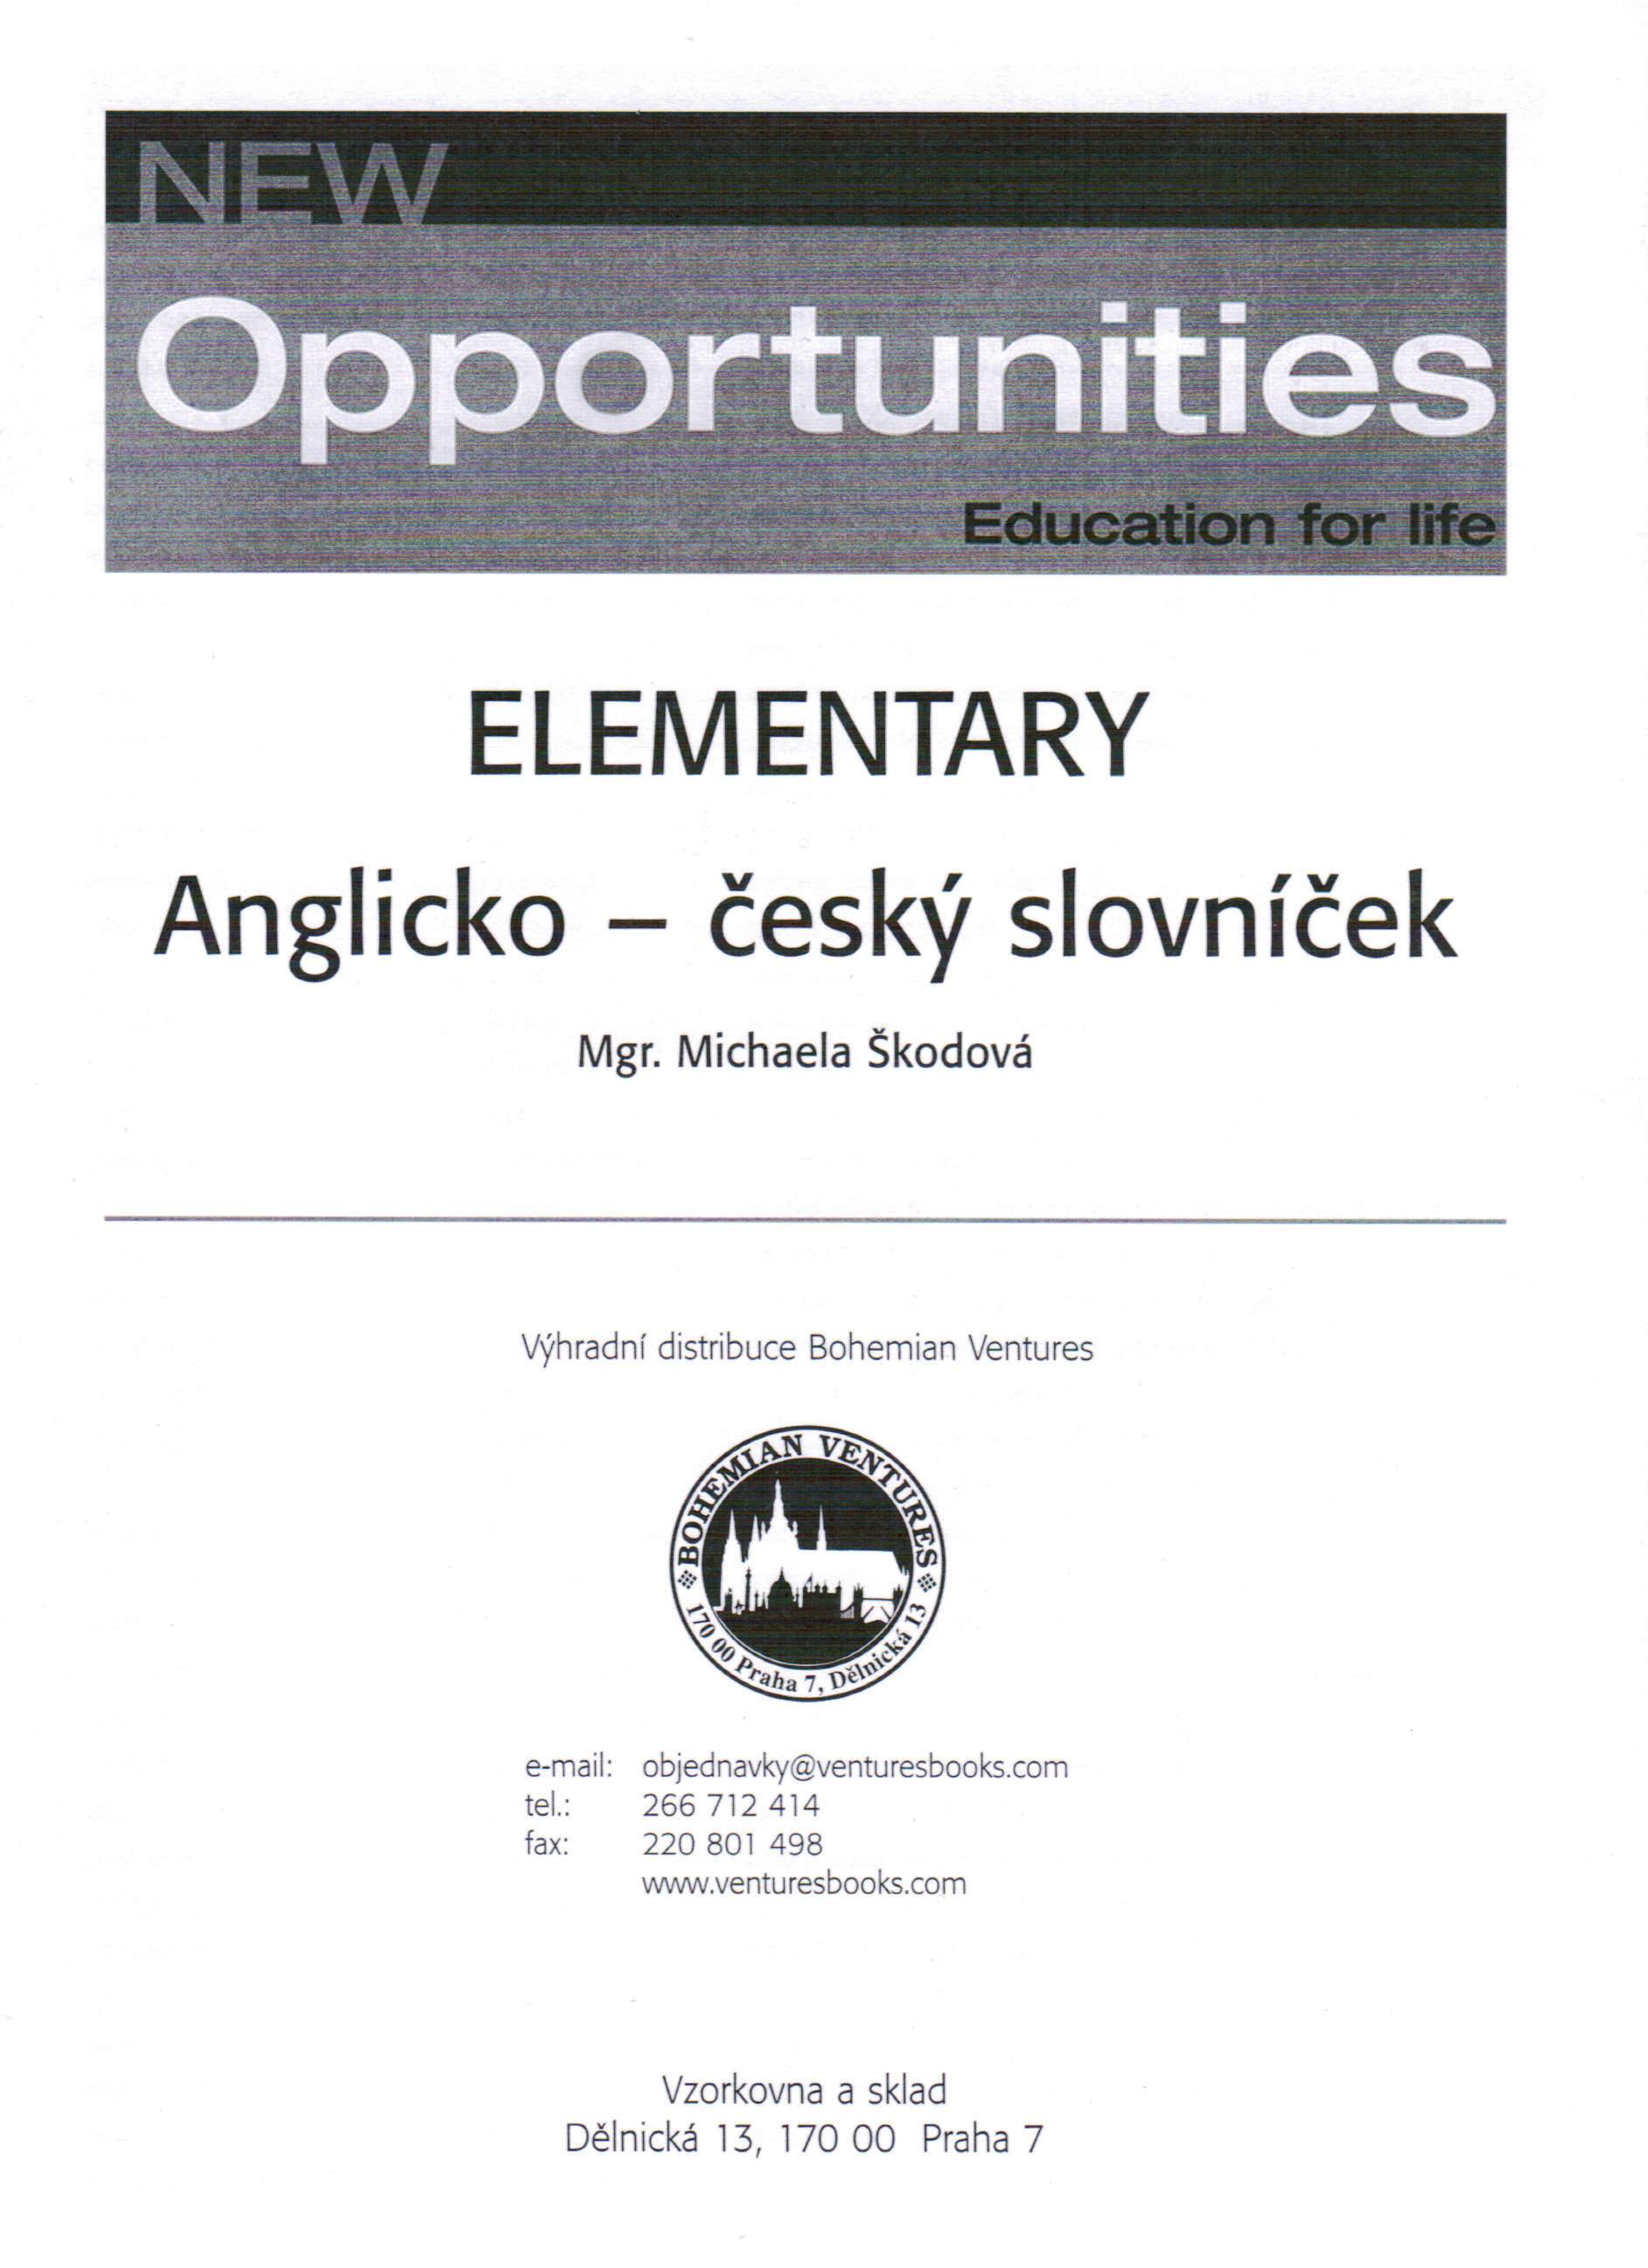 New Opportunities Elementary Anglicko-český slovníček